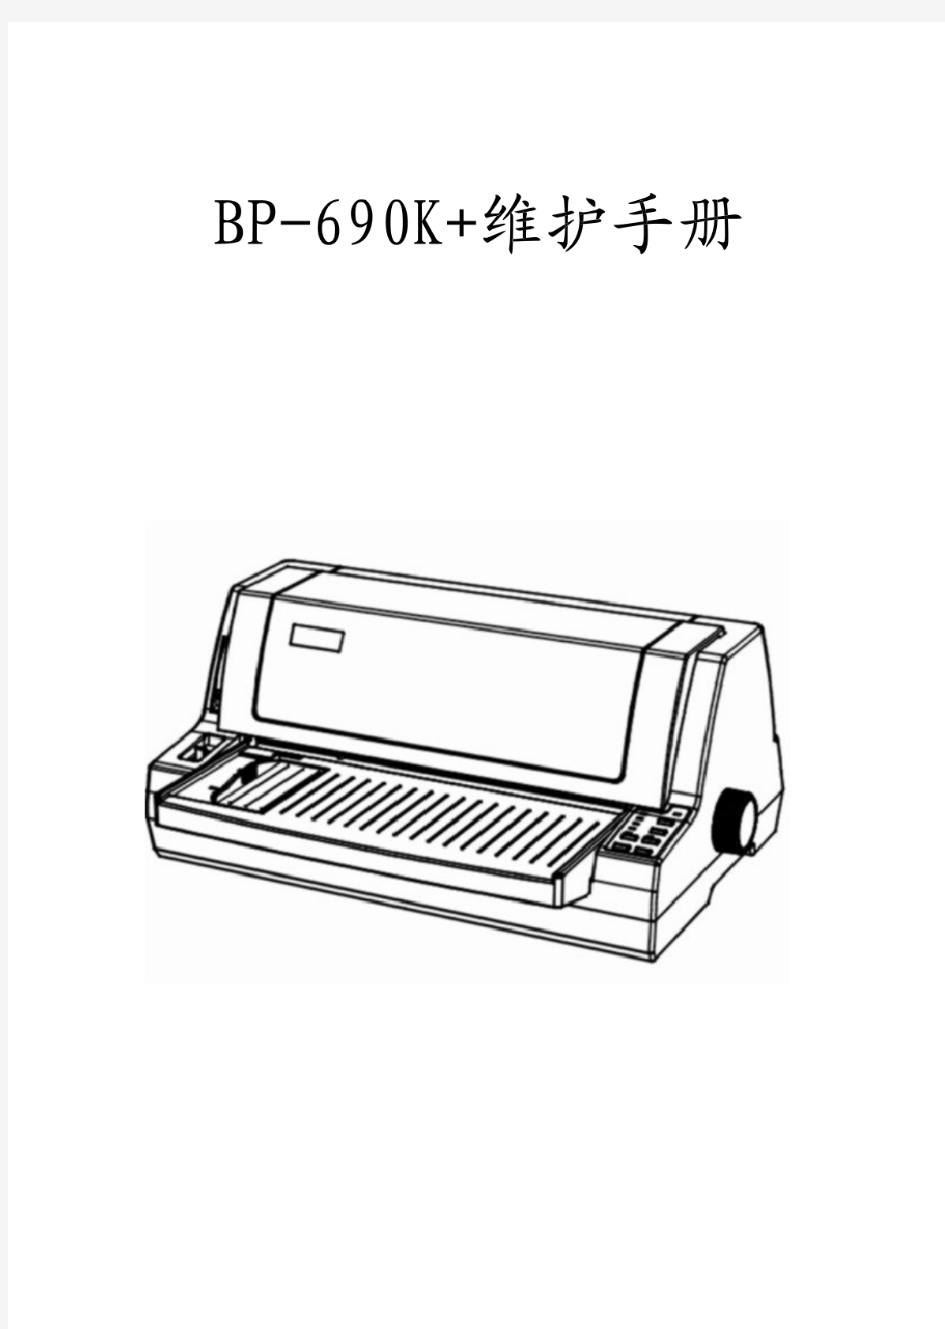 实达690K系列打印机维护手册